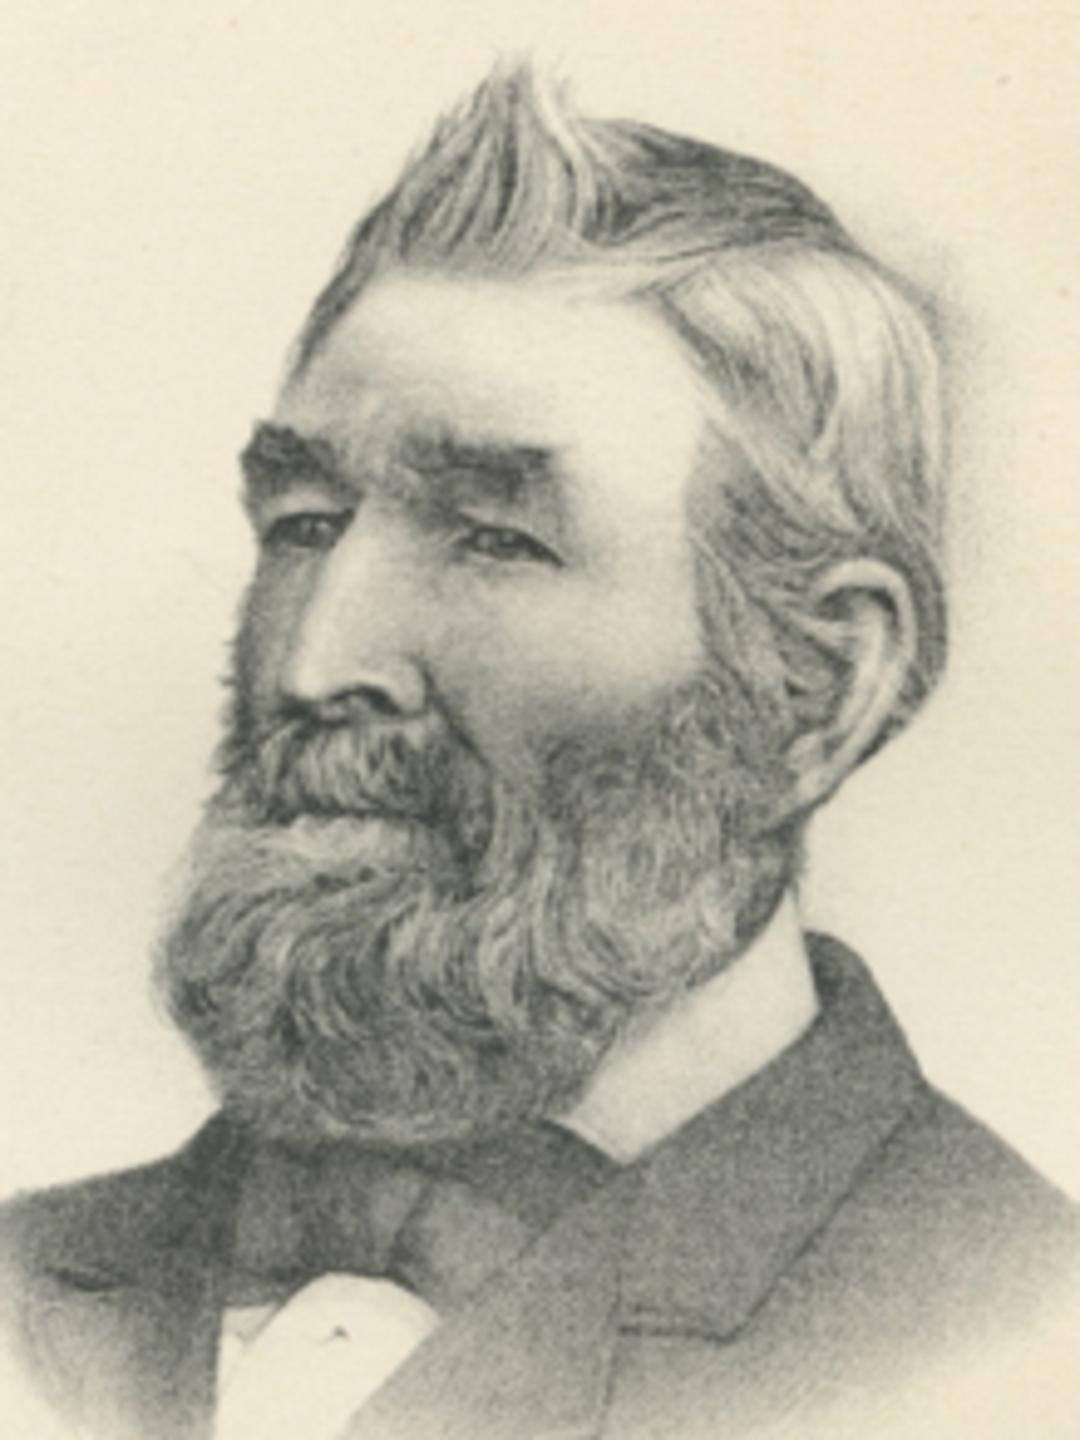 Andrew Love (1808 - 1890)